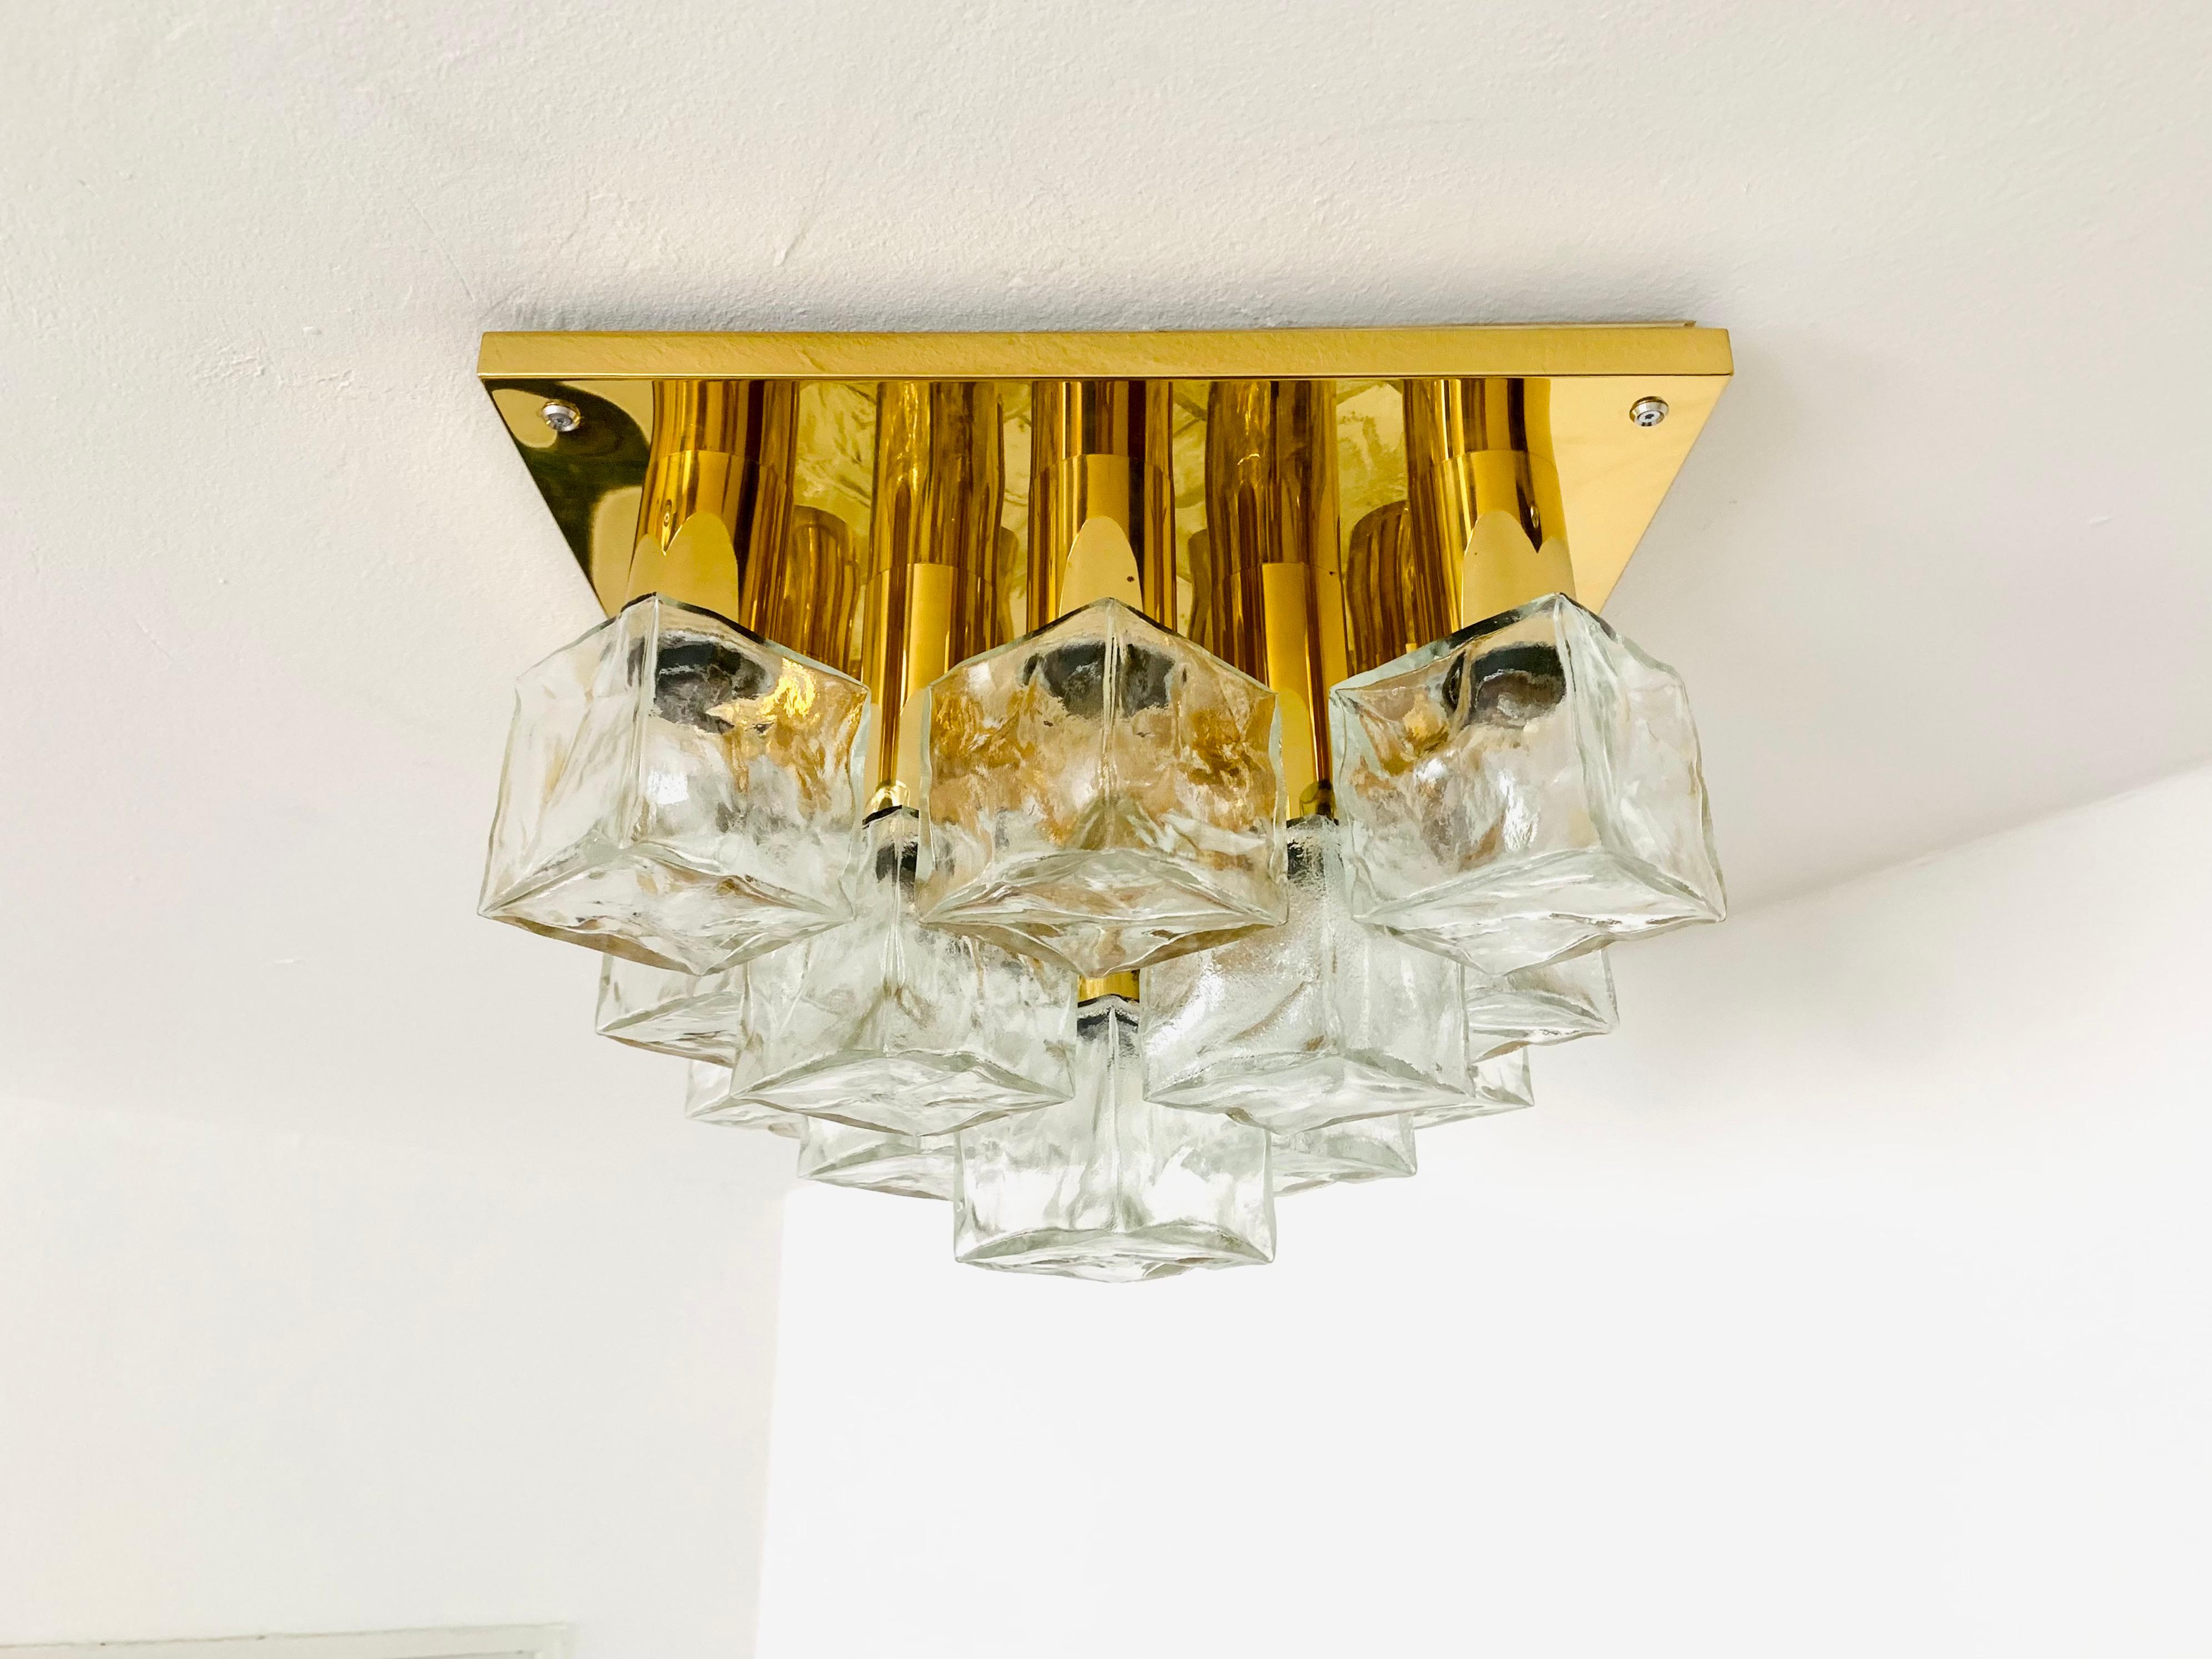 Wunderschöne Deckenlampe aus Eisglas aus den 1960er Jahren.
Die formschönen Murano-Glaselemente verbreiten ein beeindruckend funkelndes Lichtspiel.
Sehr hochwertig verarbeitet und ein echter Blickfang für jede Wohnung.
Große Version mit 13